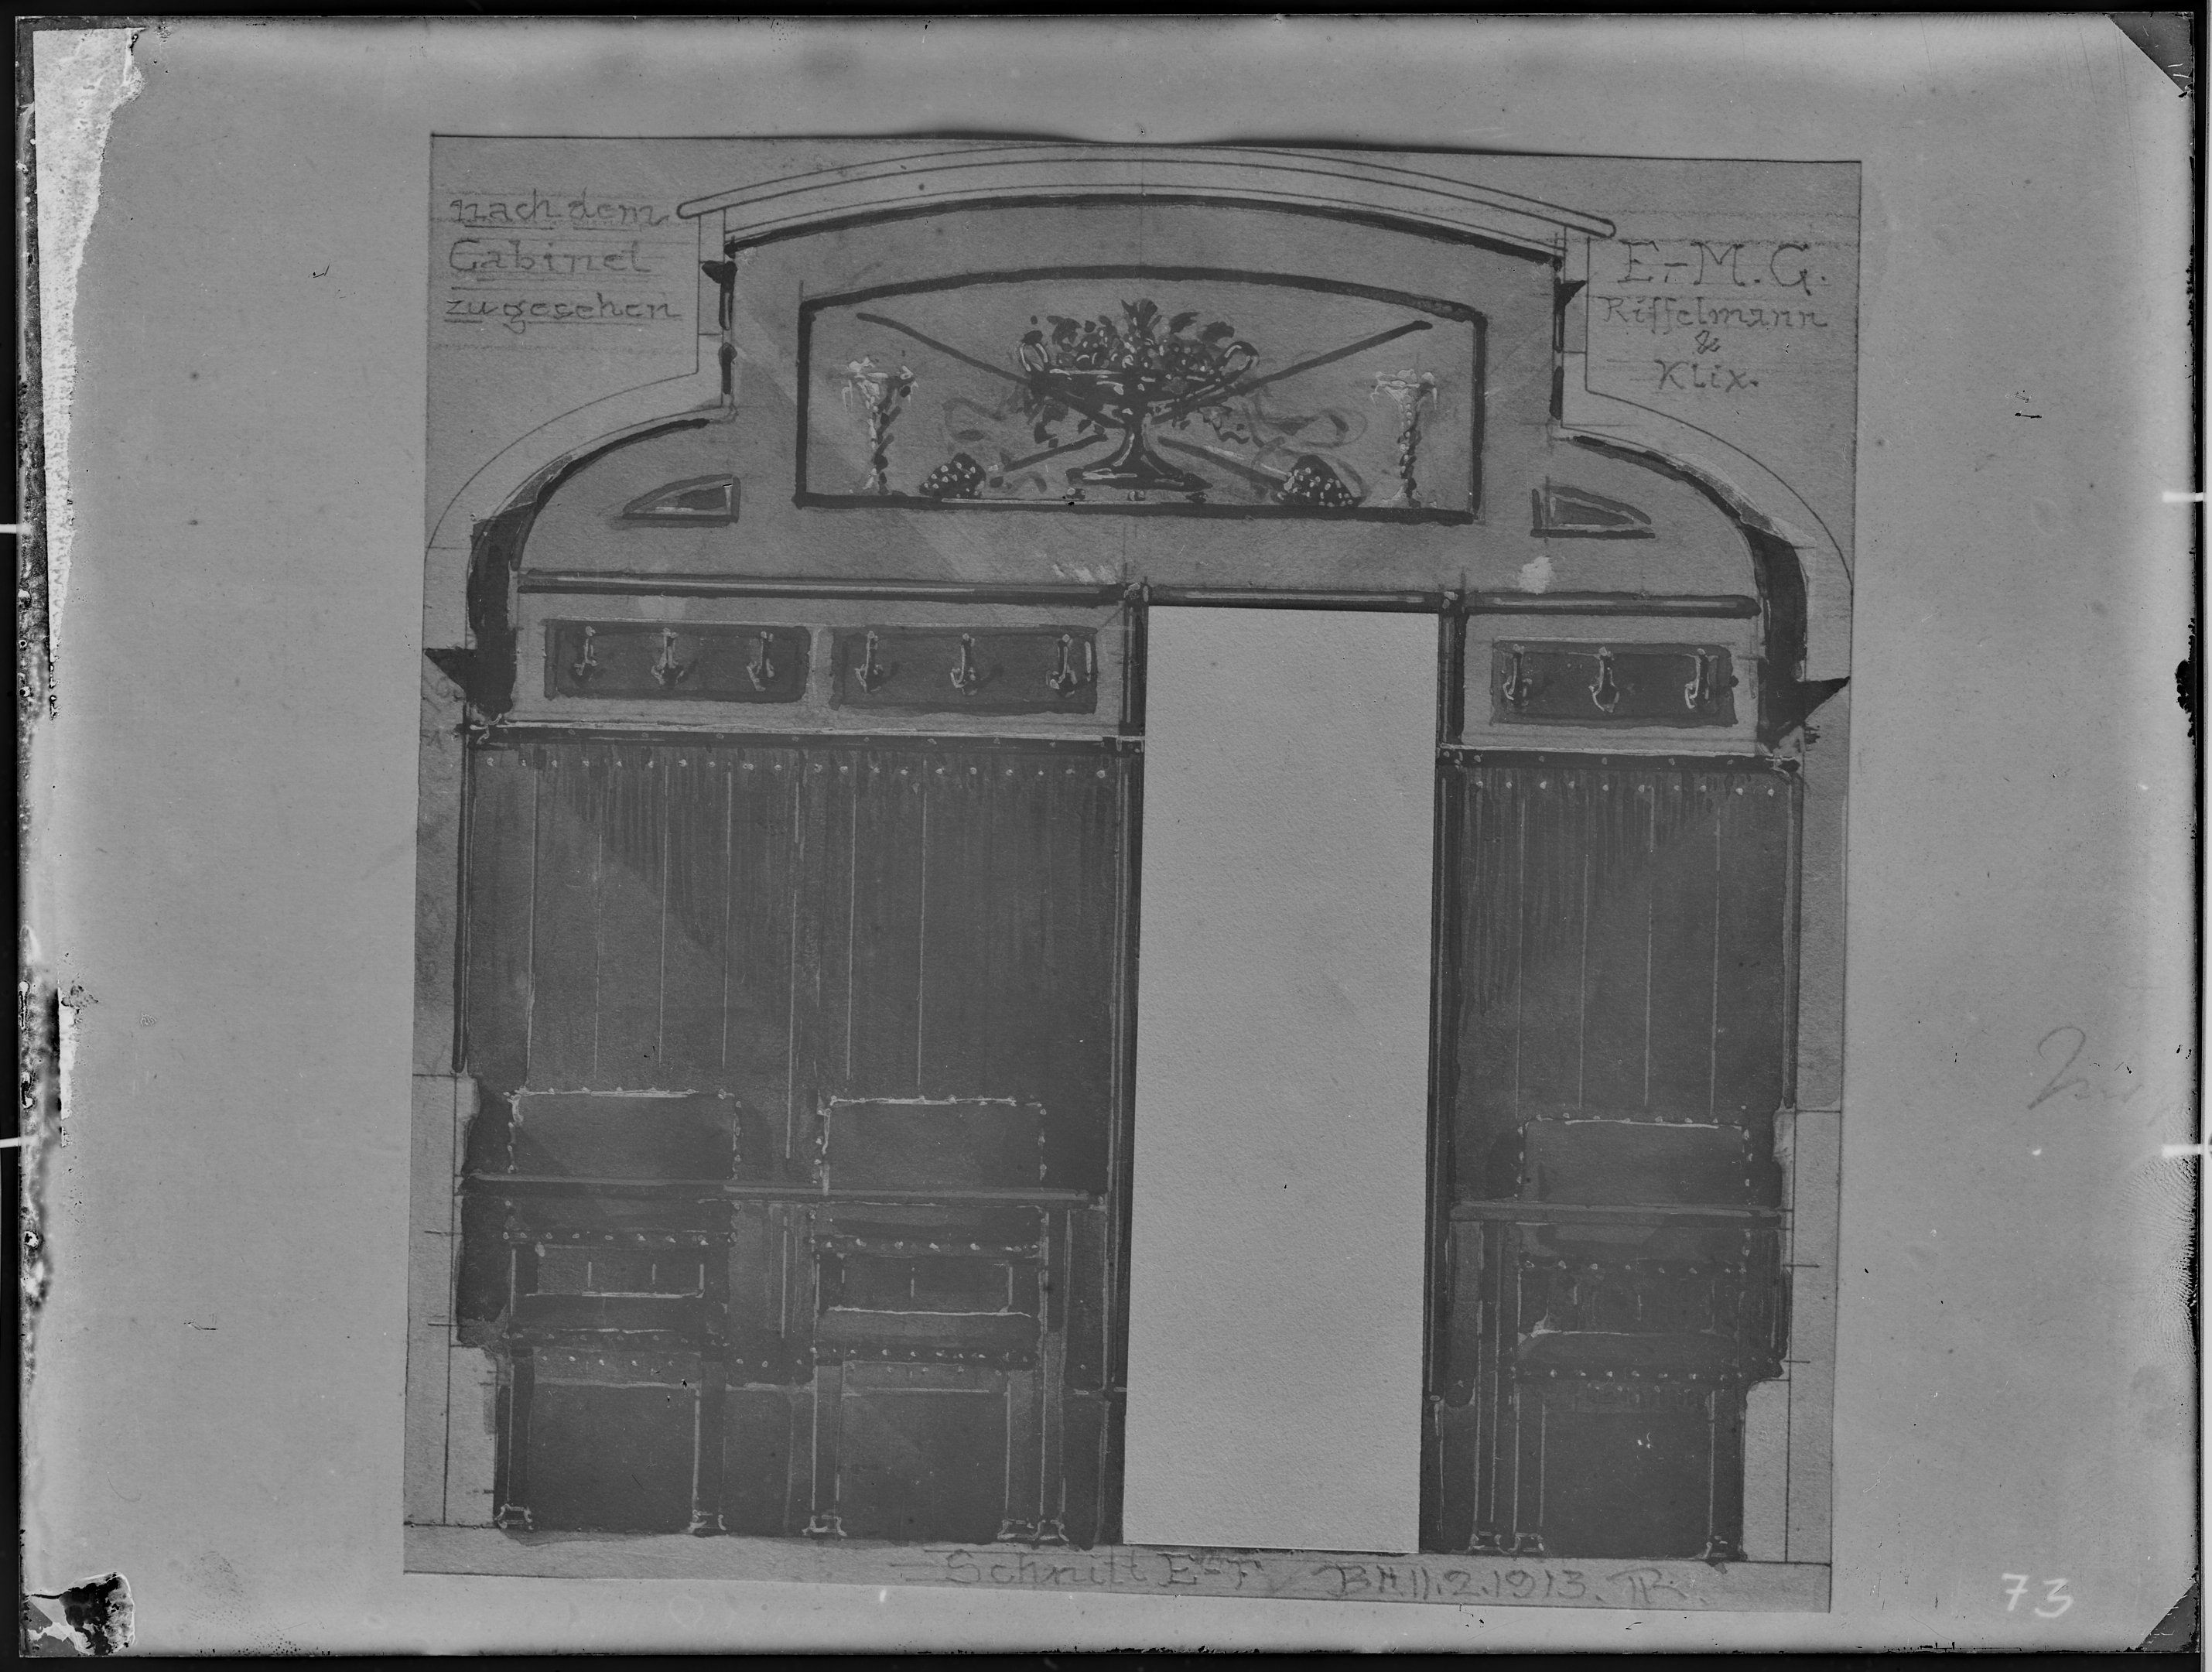 Fotografie: Entwurfszeichnung einer Eingangstür zum Raucherkabinett eines Speisewagens, 1913. Eisenbahn-Speisewagen-Betrieb Gustav Riffelmann, Inhaber (Verkehrsmuseum Dresden CC BY-NC-SA)